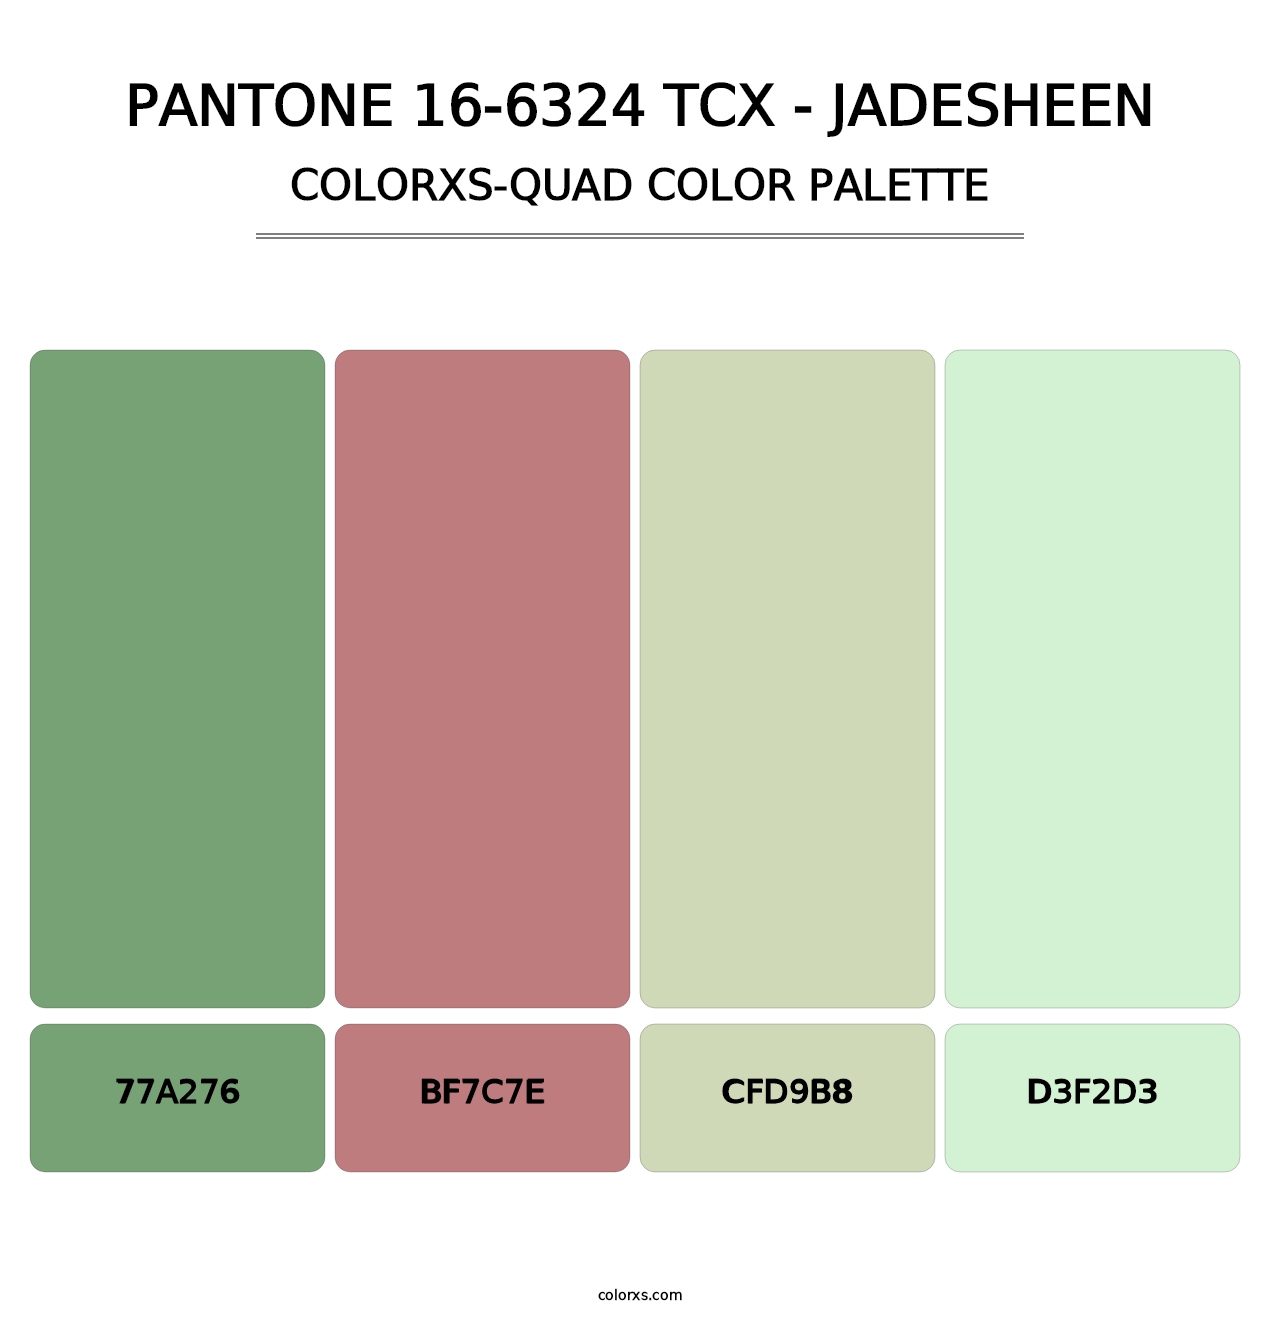 PANTONE 16-6324 TCX - Jadesheen - Colorxs Quad Palette